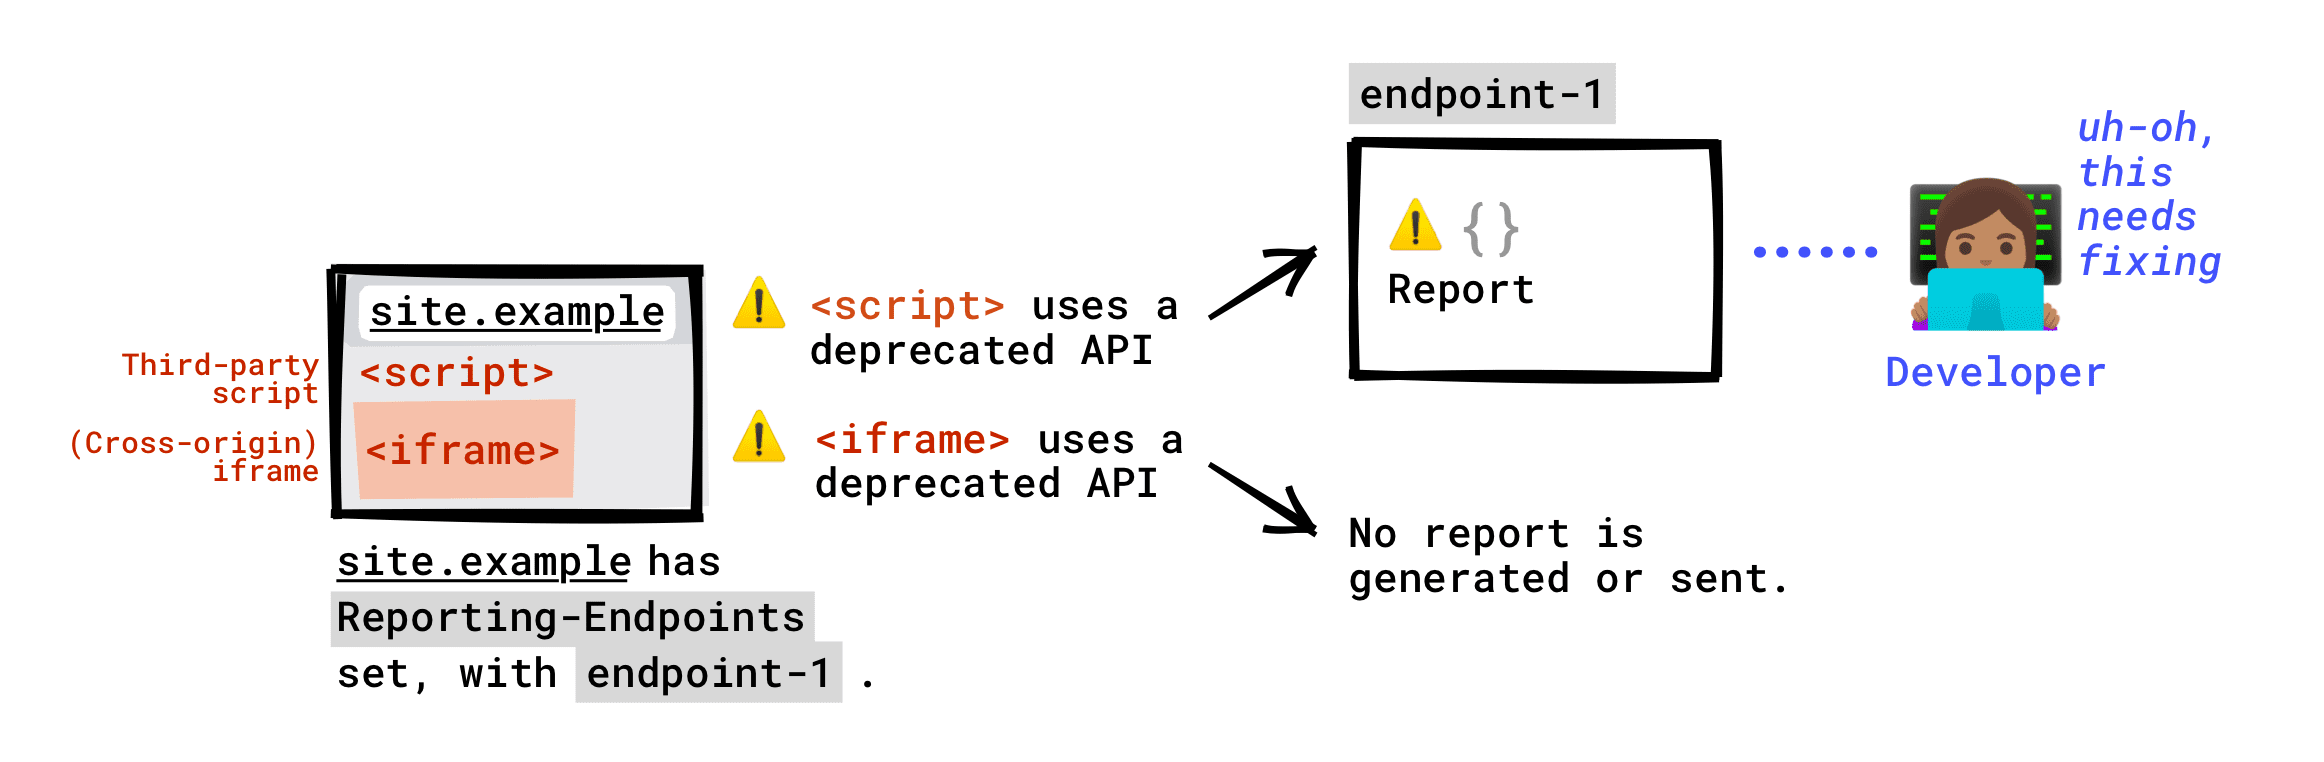 Jeśli na swojej stronie masz skonfigurowany nagłówek Reporting-Endpoints: wycofany interfejs API wywoływany przez skrypty innych firm uruchomione na Twojej stronie zostanie zgłoszony do Twojego punktu końcowego. Wycofany interfejs API wywoływany przez element iframe umieszczony na stronie nie zostanie zgłoszony do Twojego punktu końcowego. Raport o wycofaniu zostanie wygenerowany tylko wtedy, gdy serwer iframe skonfigurował punkty końcowe raportowania, a zostanie on wysłany do punktu końcowego skonfigurowanego przez serwer elementu iframe.